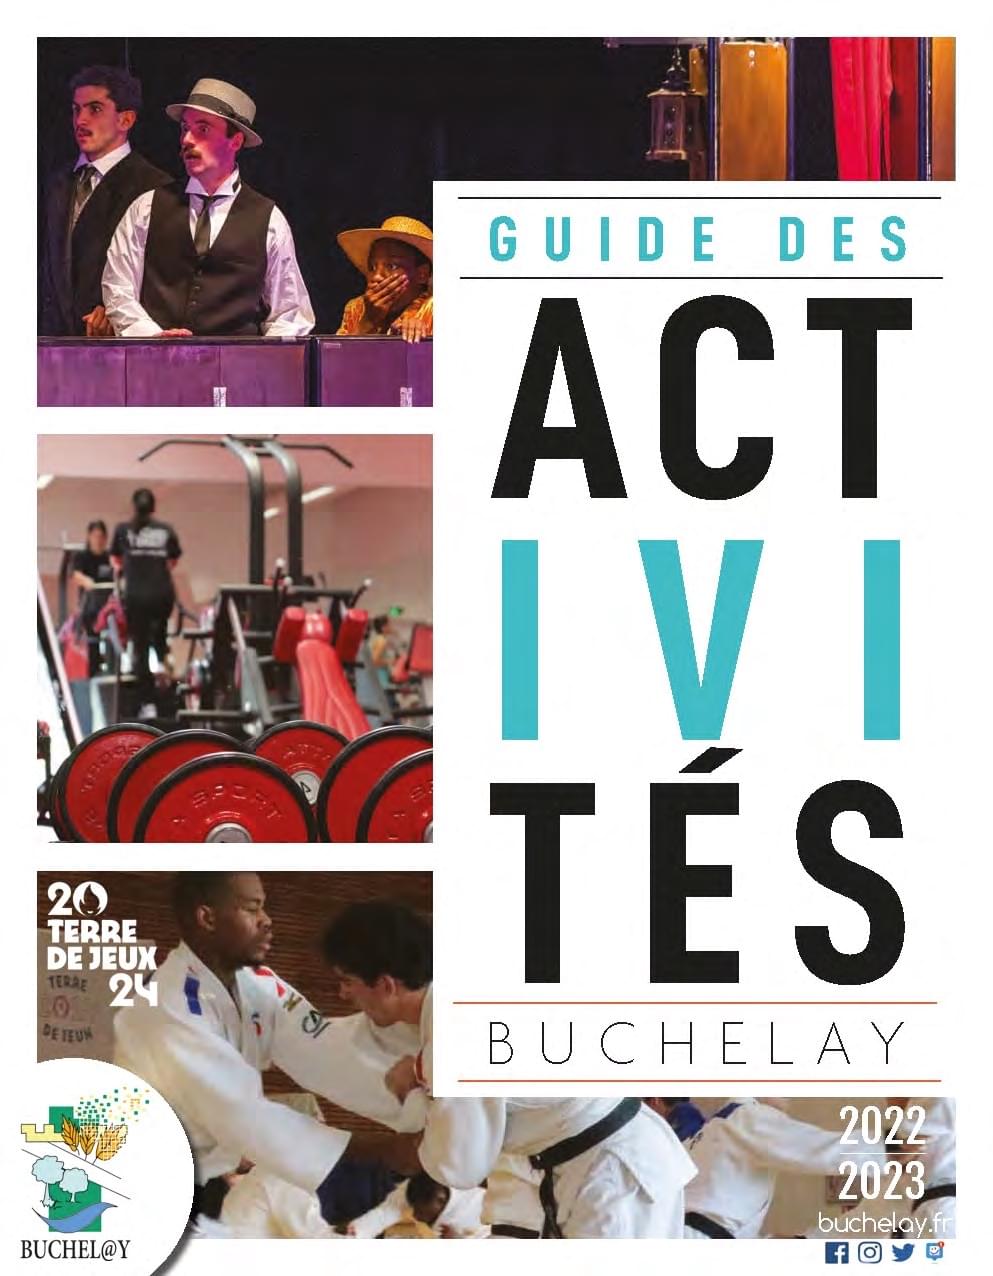 Le Guides des activités associatives et municipales de Buchelay en téléchargement.